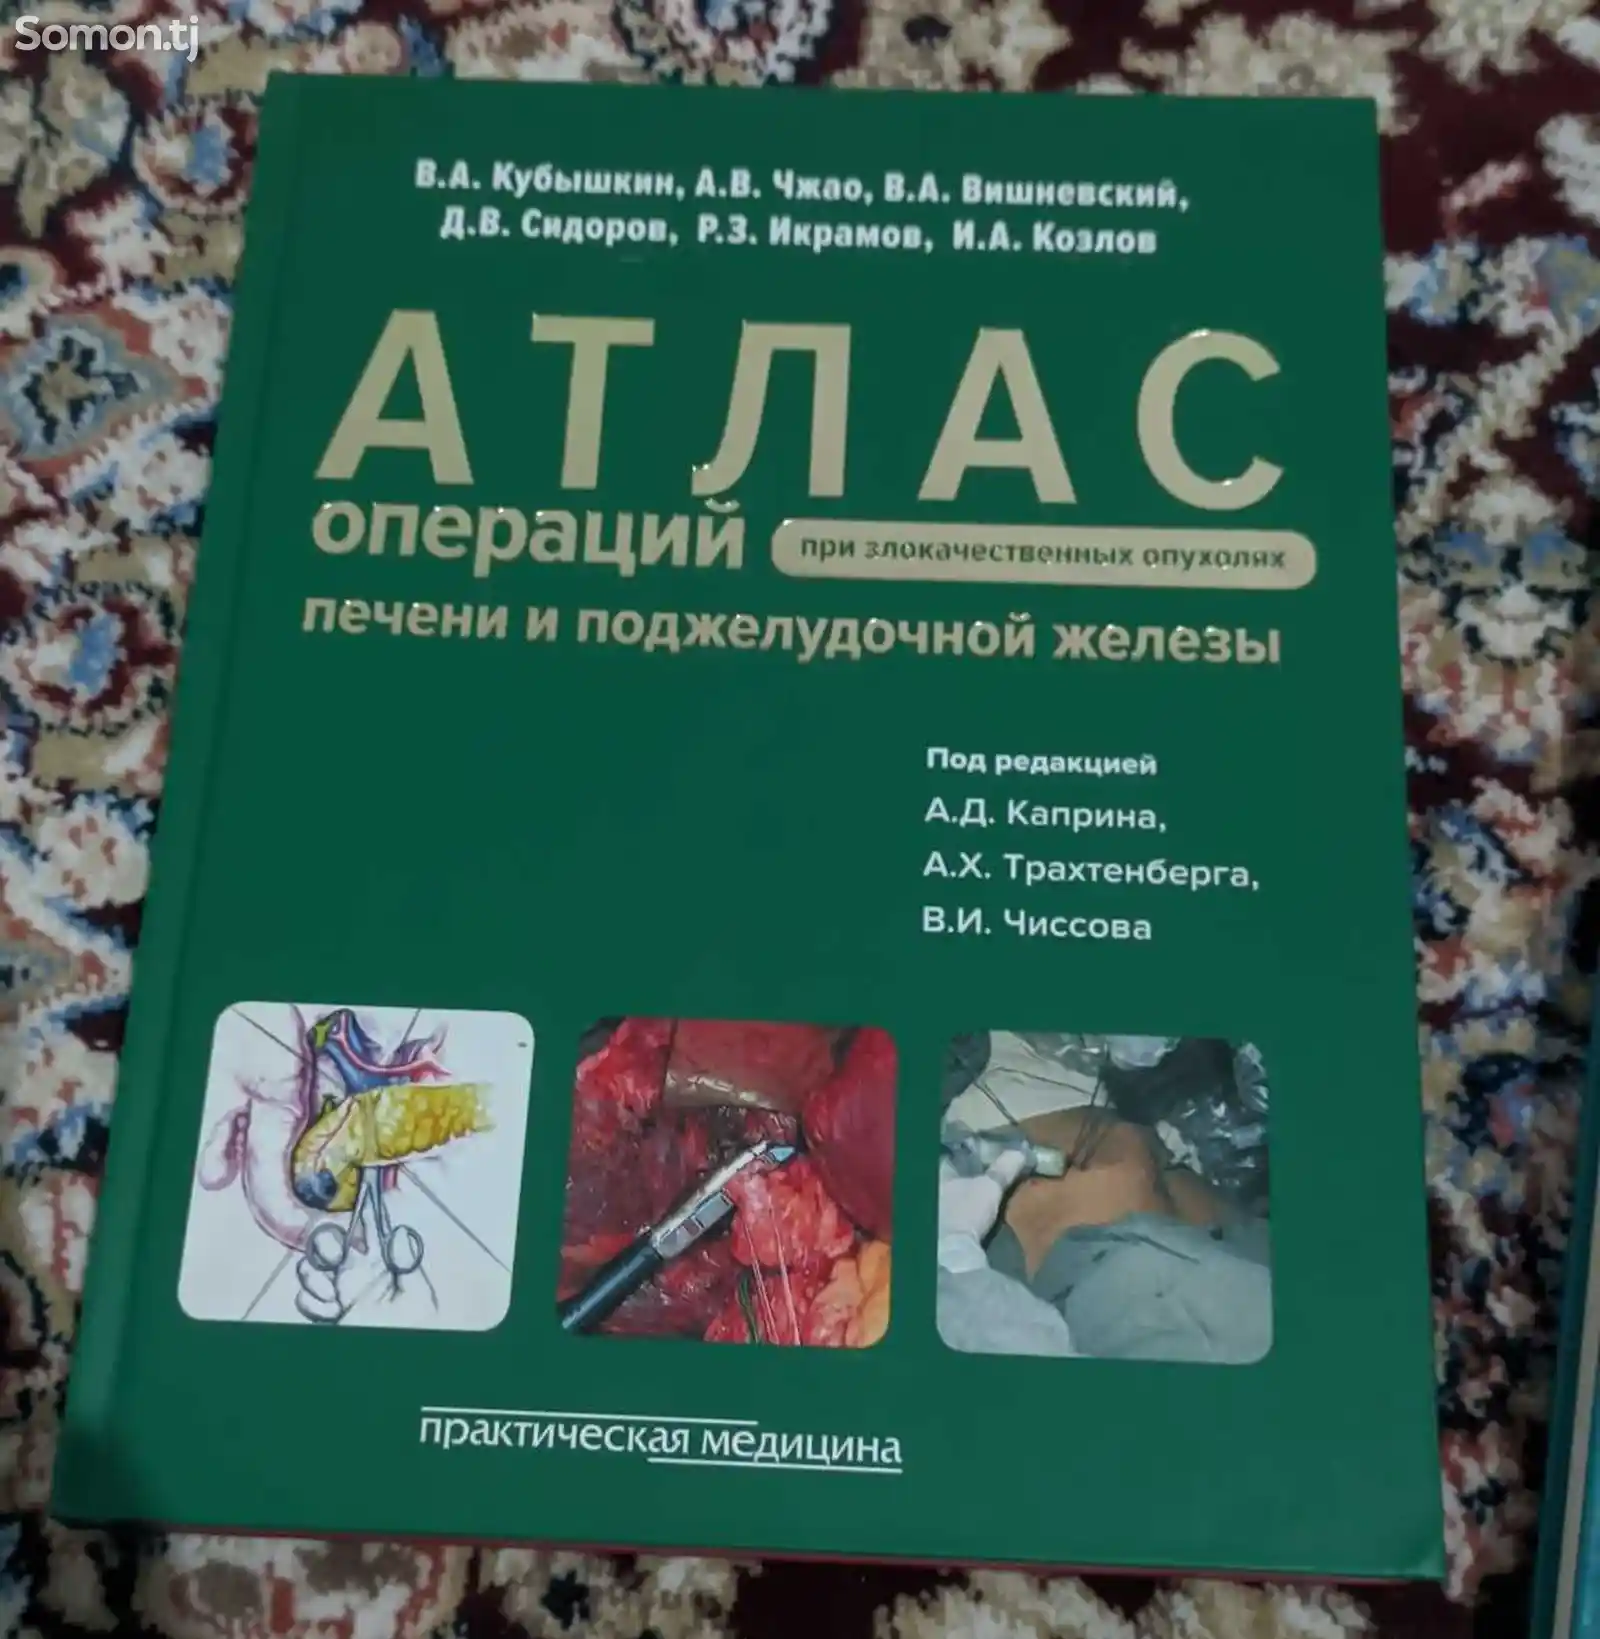 Книга атлас операций печени и поджелудочной железы-1